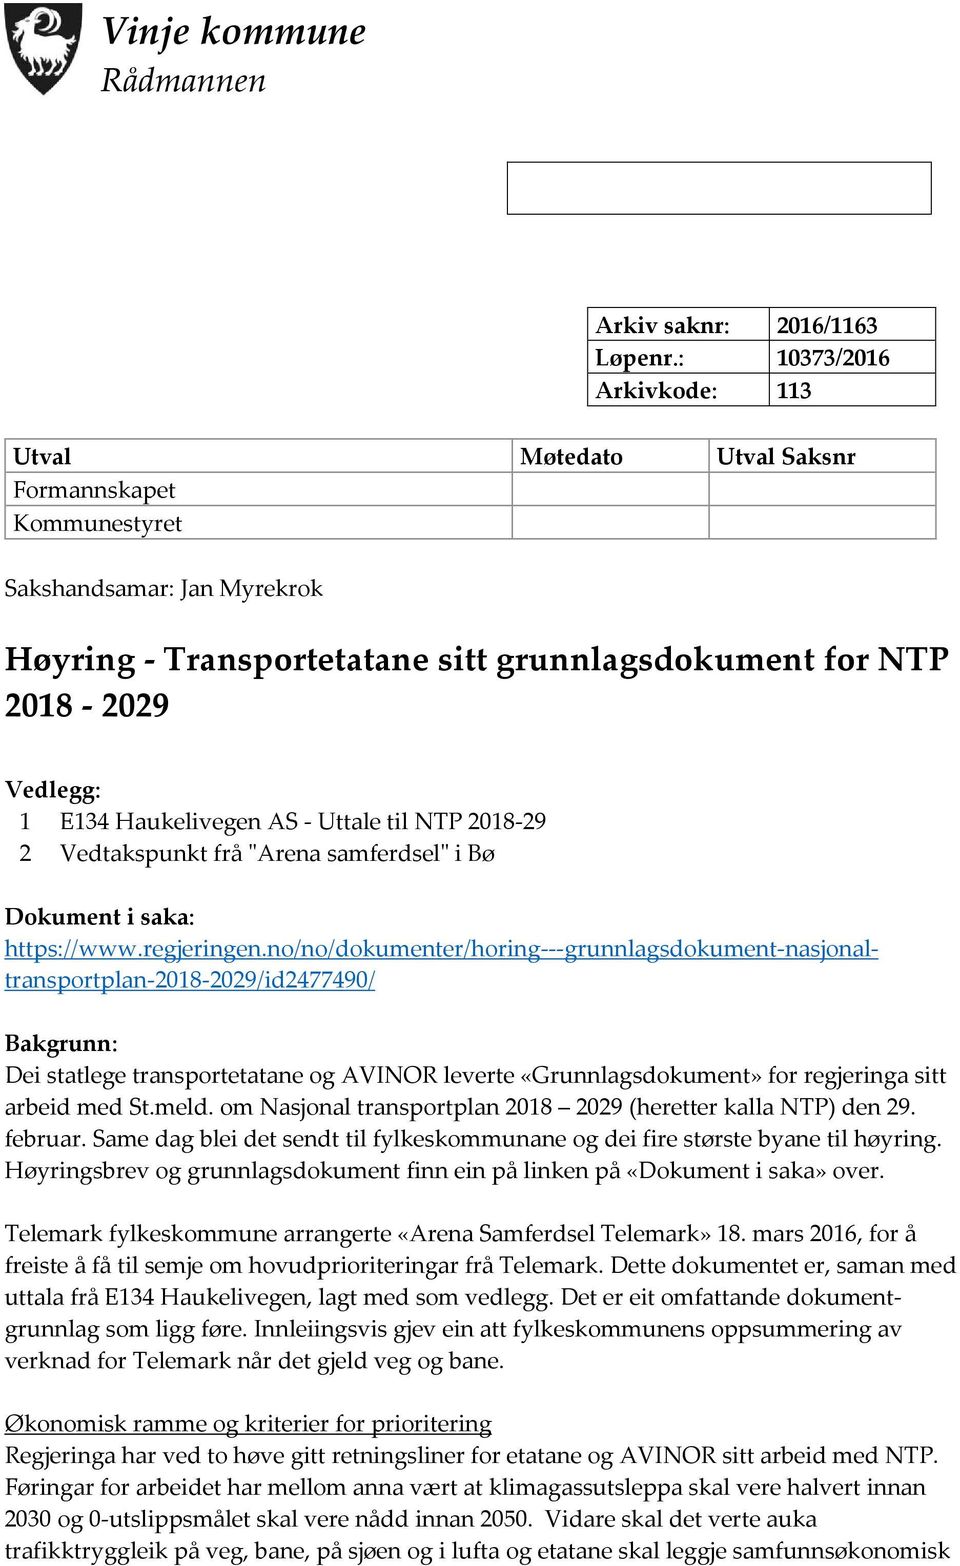 Haukelivegen AS - Uttale til NTP 2018-29 2 Vedtakspunkt frå "Arena samferdsel" i Bø Dokument i saka: https://www.regjeringen.